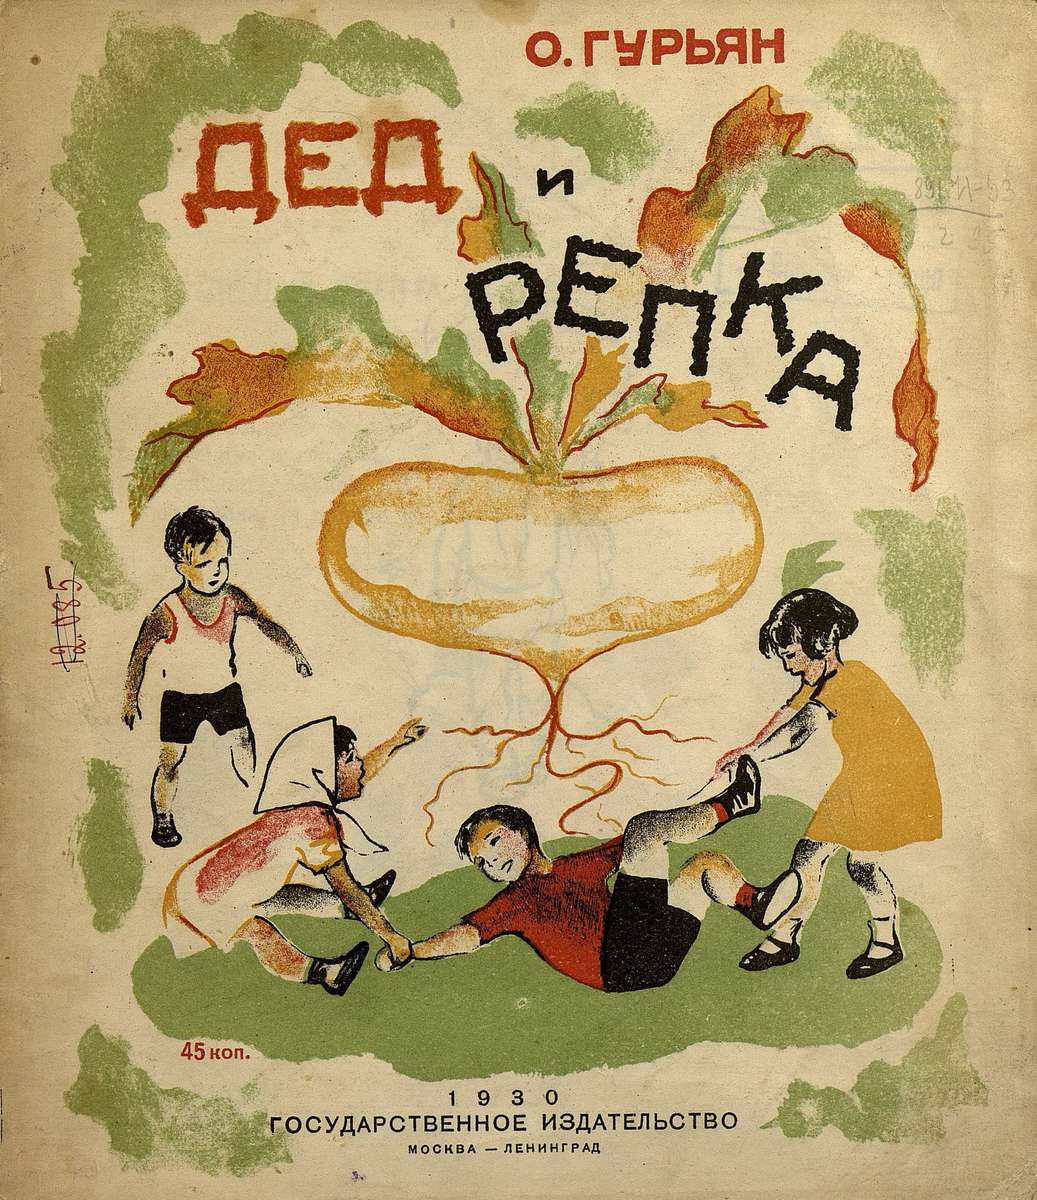 Гурьян Ольга Марковна - Дед и репка - 1930